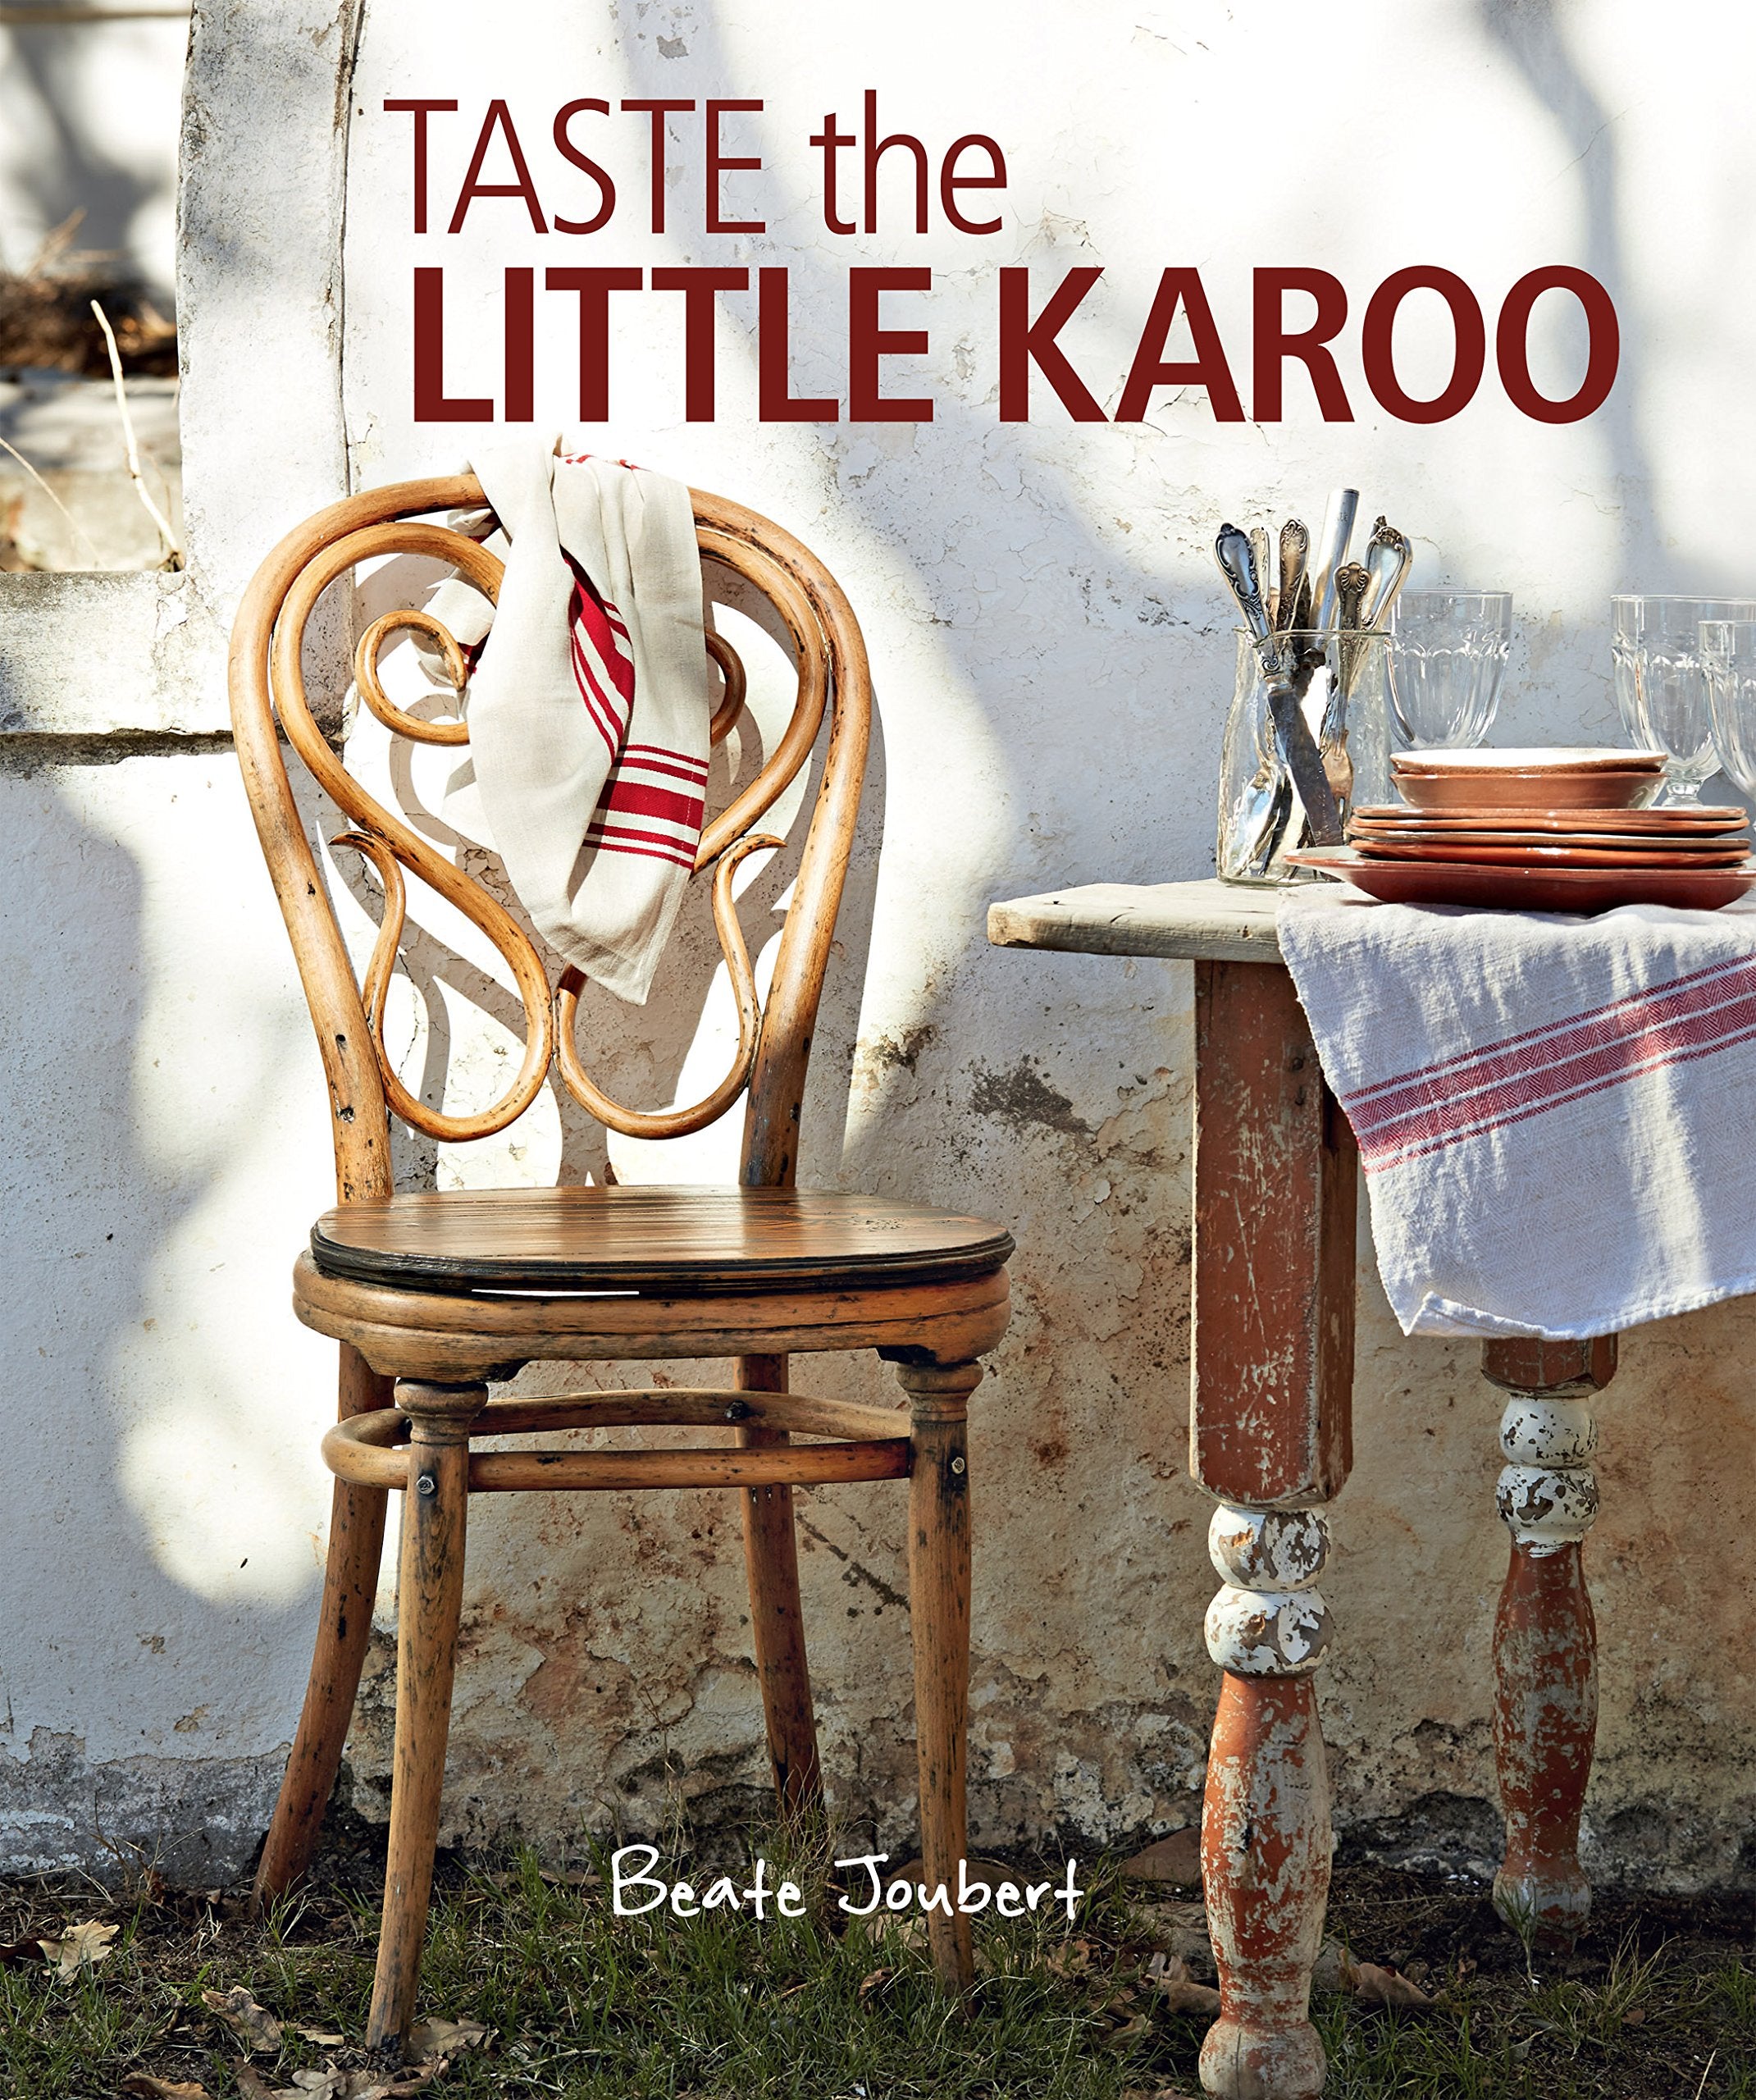 Taste the Little Karoo (Beate Joubert)